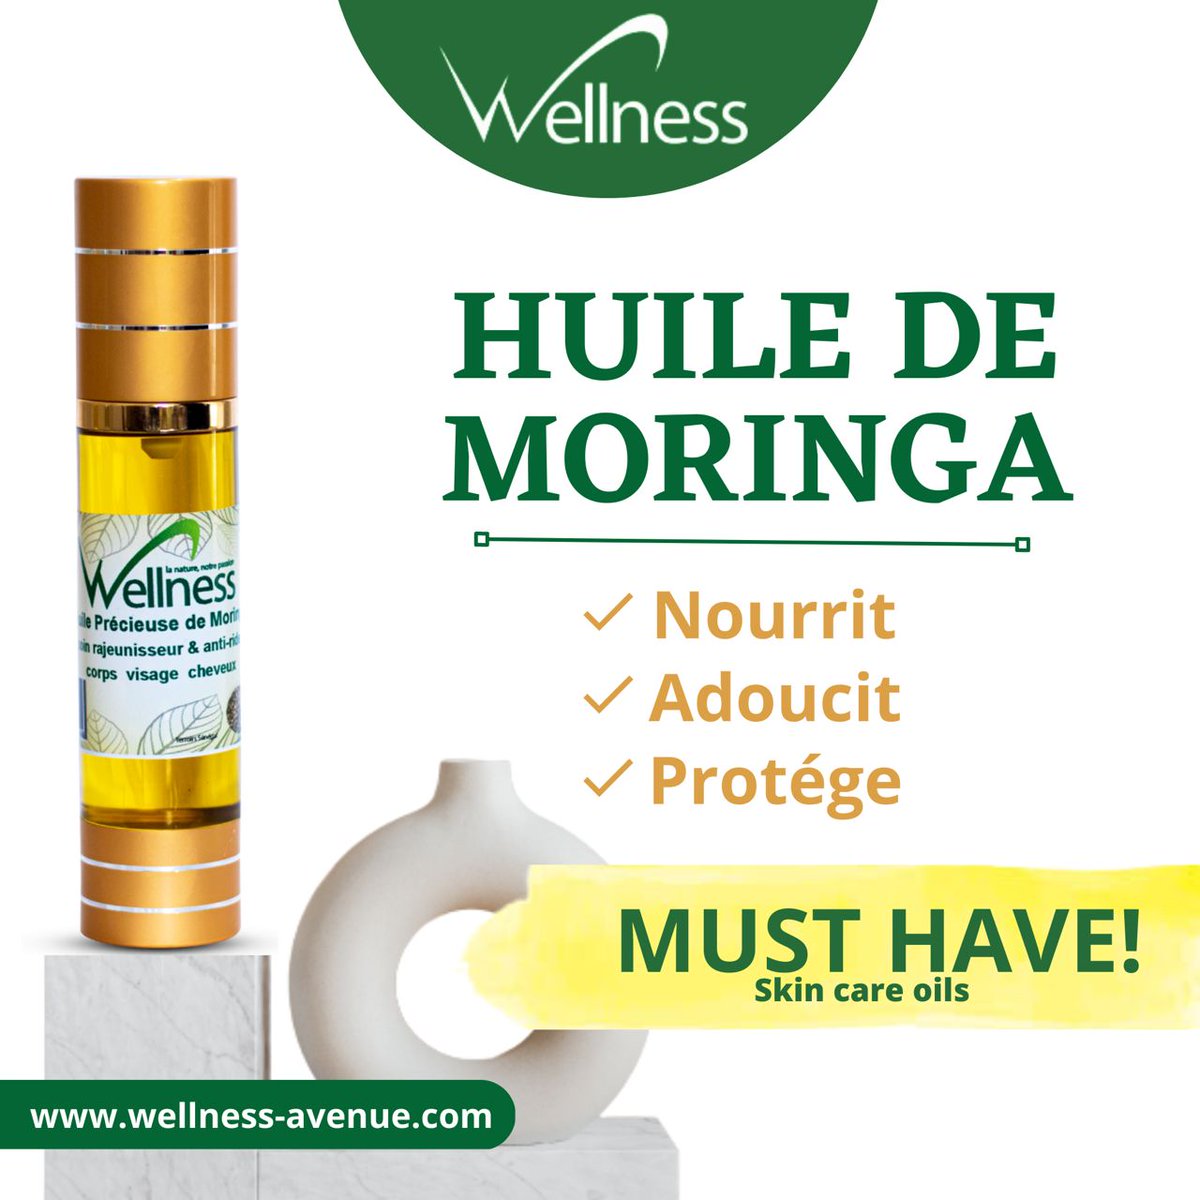 ✨Profitez au quotidien des bienfaits de l'huile de moringa Wellness 🌿. Nourrissante et antiâge. Fabuleuse pour réparer et hydrater les peaux desséchées et sensibles.🌹 ☎️+33 7 51 32 80 95 / +221 77 735 03 38   📩contact@wellness-avenue.com 🌐wellnes-avenue.com